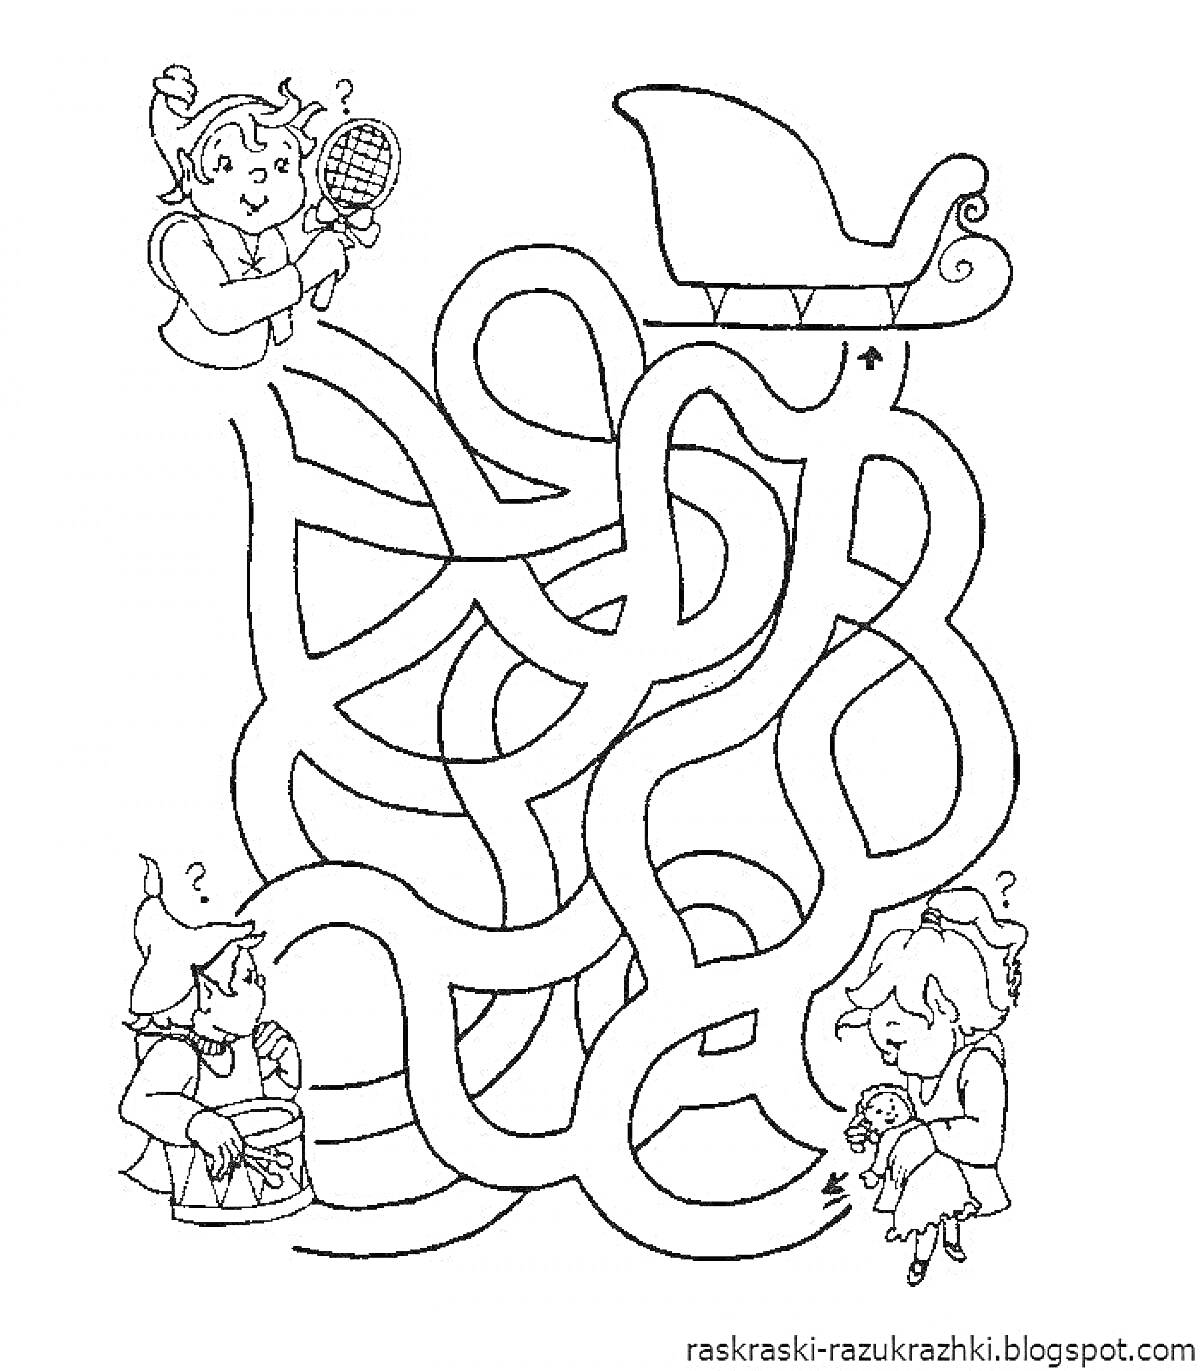 Раскраска Лабиринт с изображением эльфов и саней, эльфы держат различные игрушки и предметы